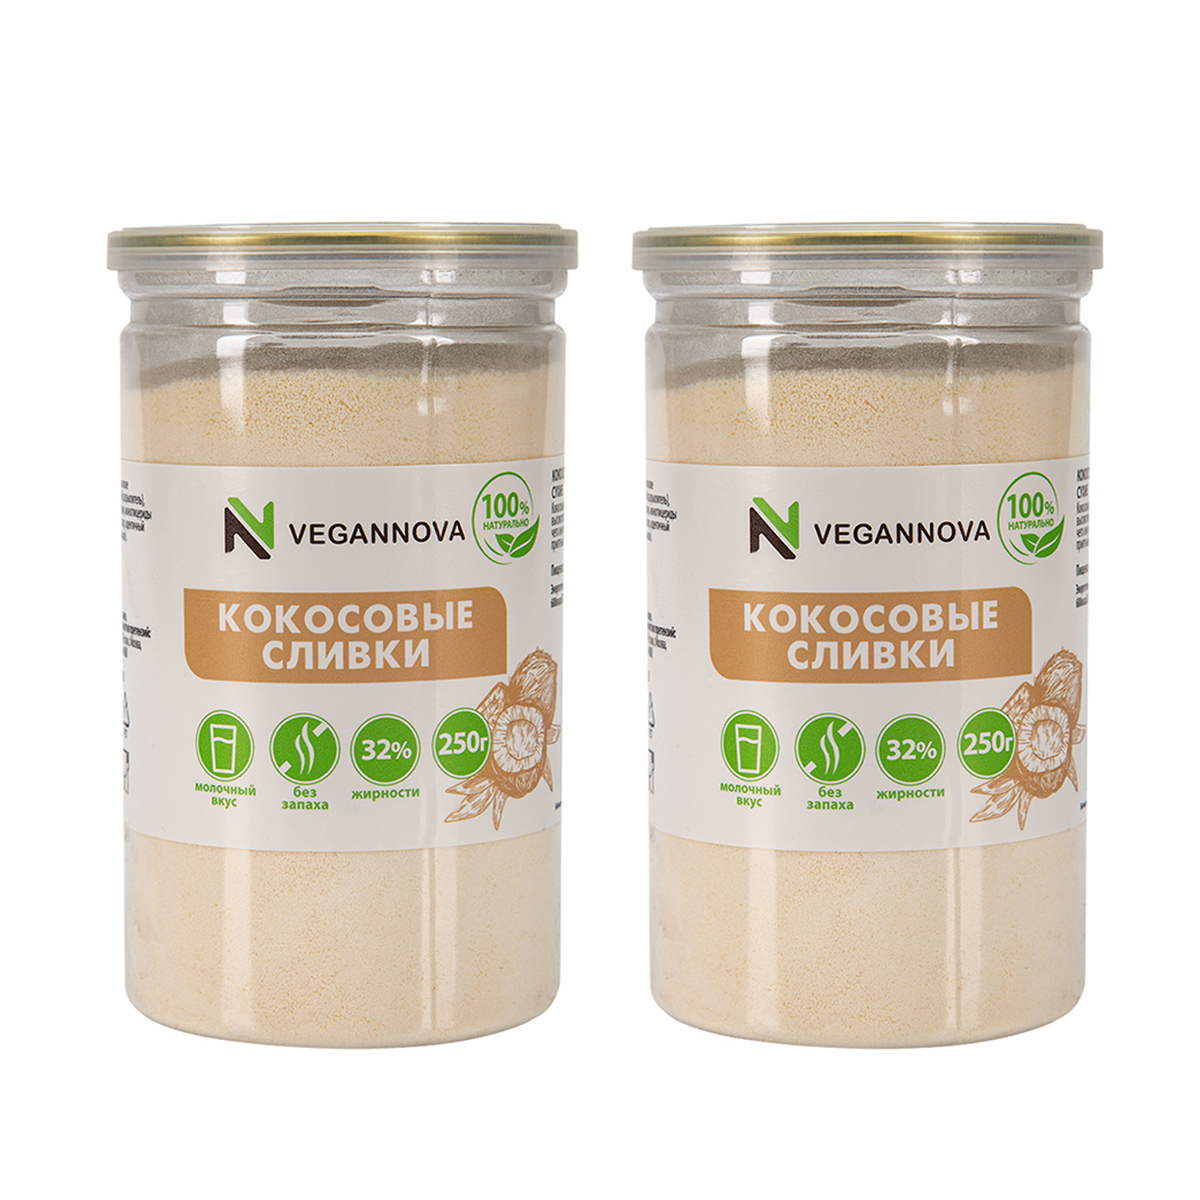 Кокосовые сливки VeganNova (2 шт. по 250 г)